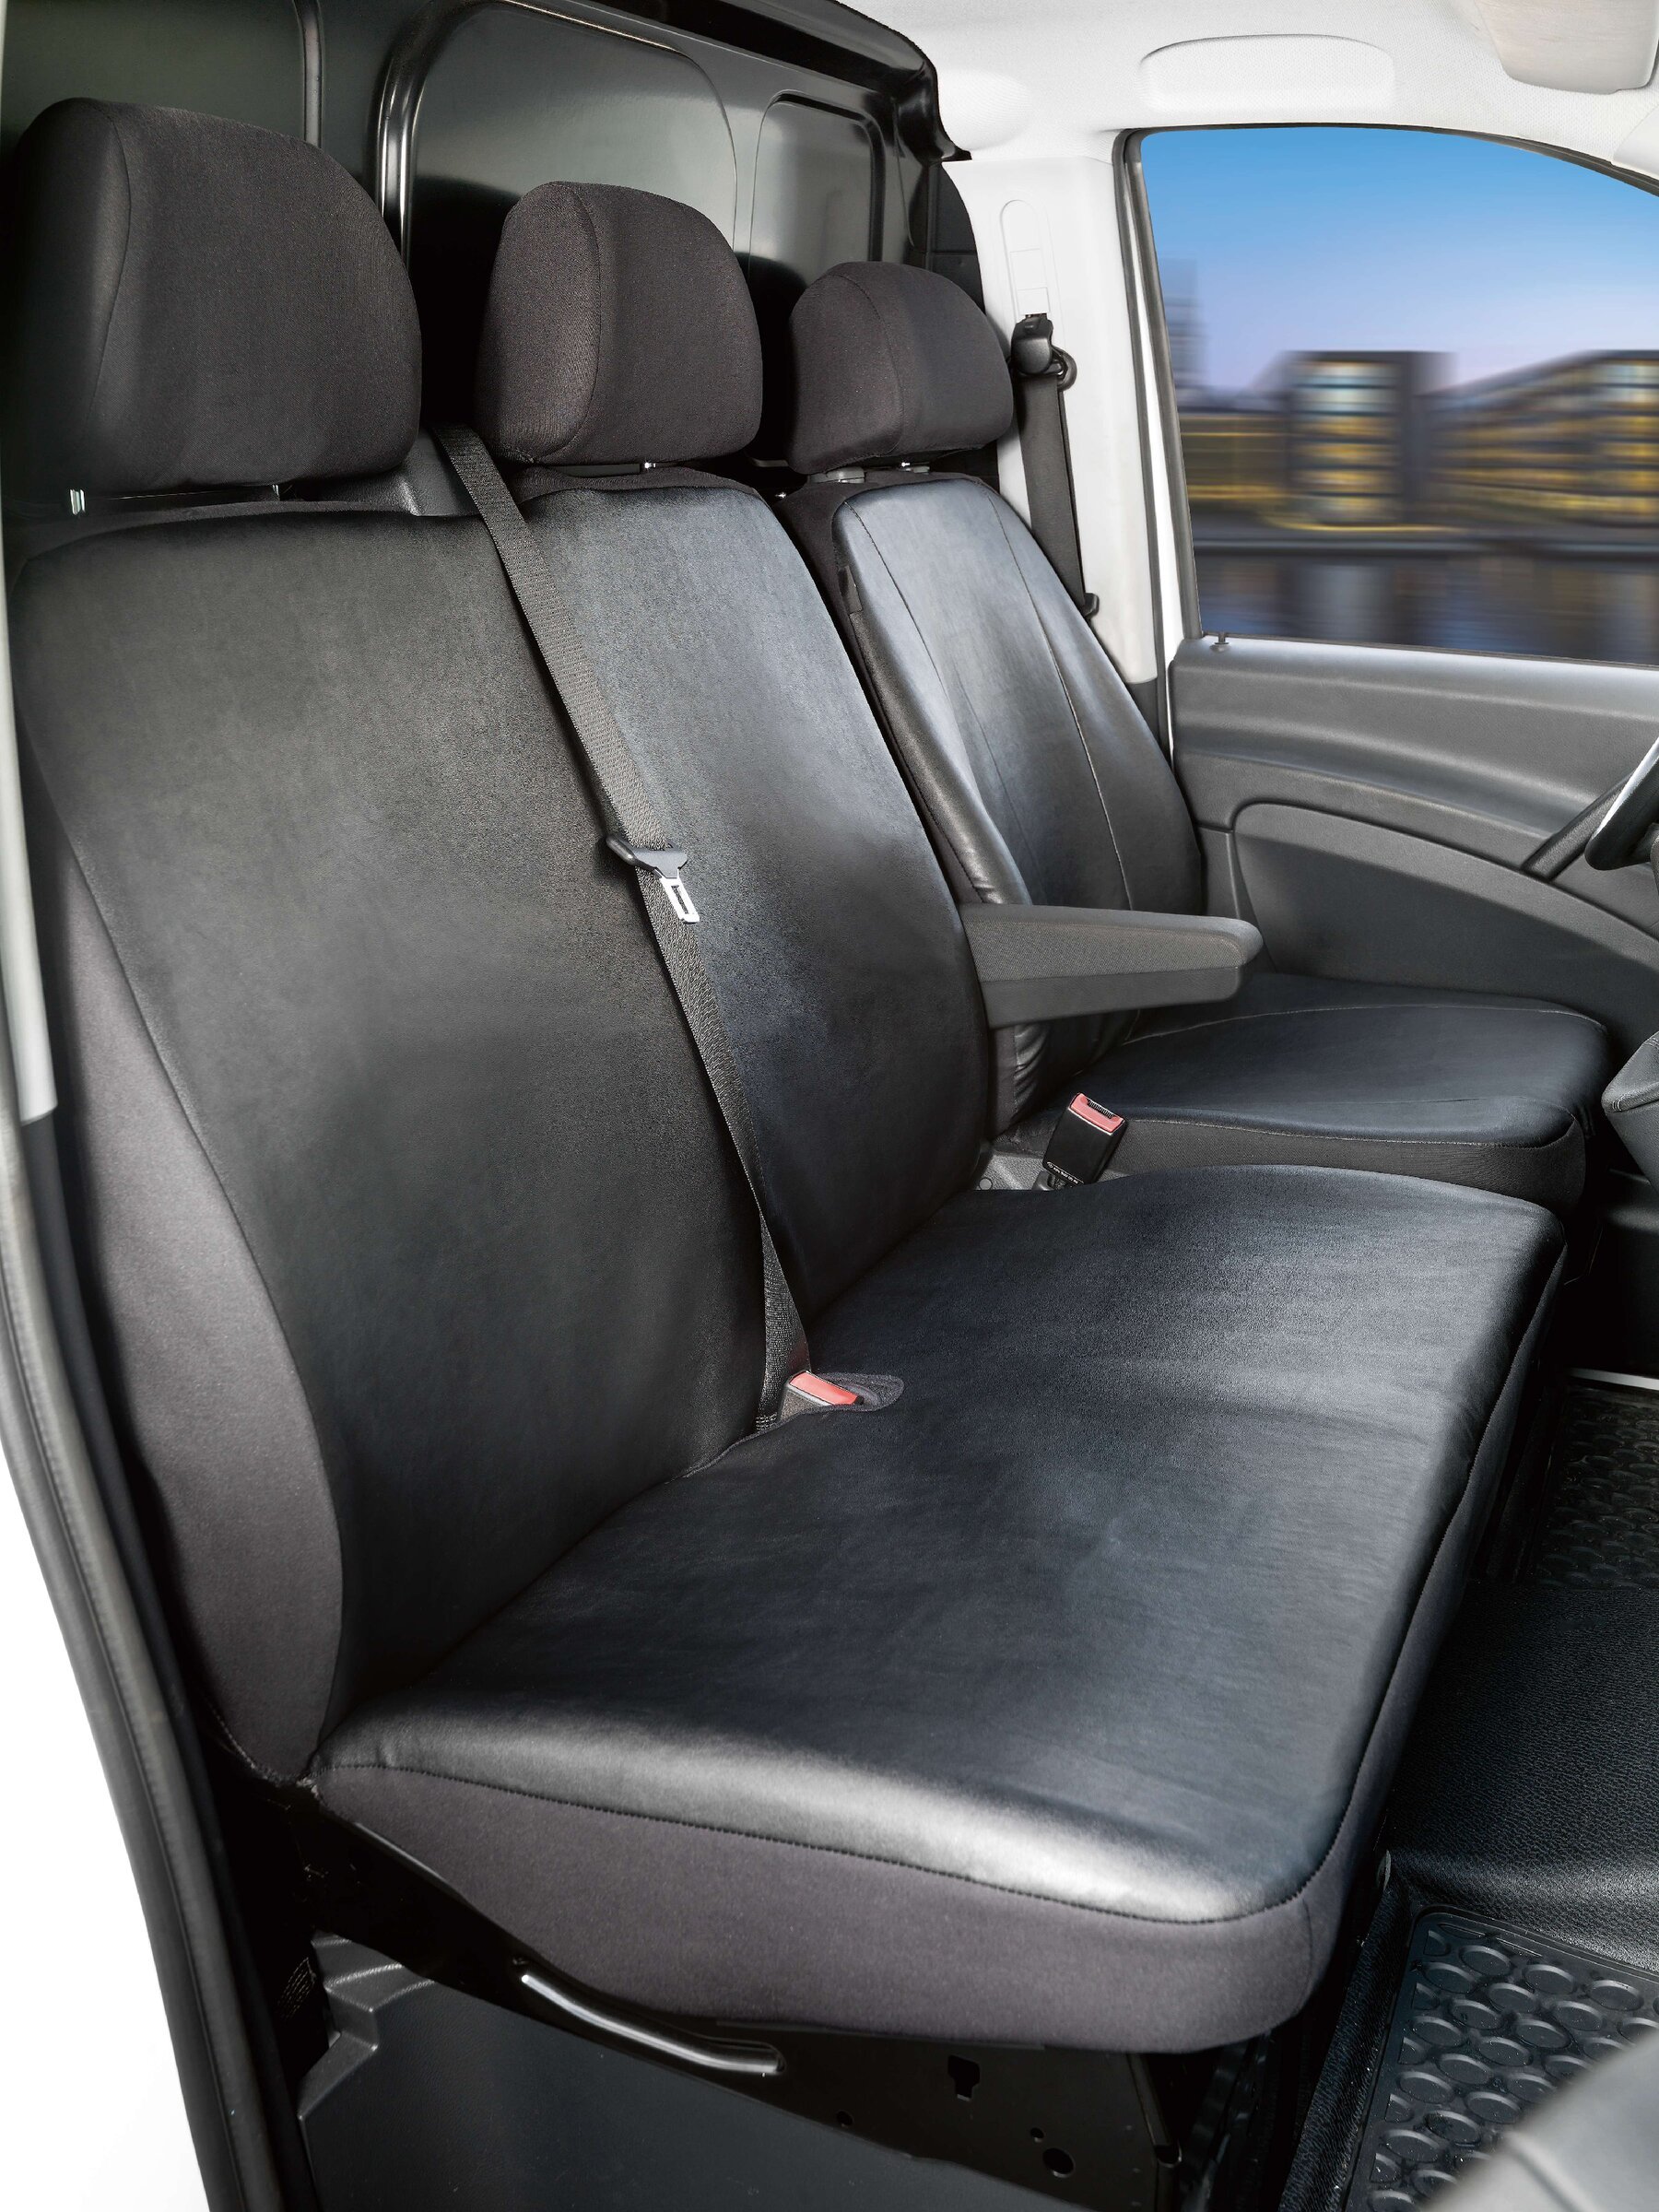 Housse de siège Transporter en simili cuir pour Mercedes-Benz Viano/Vito, siège simple